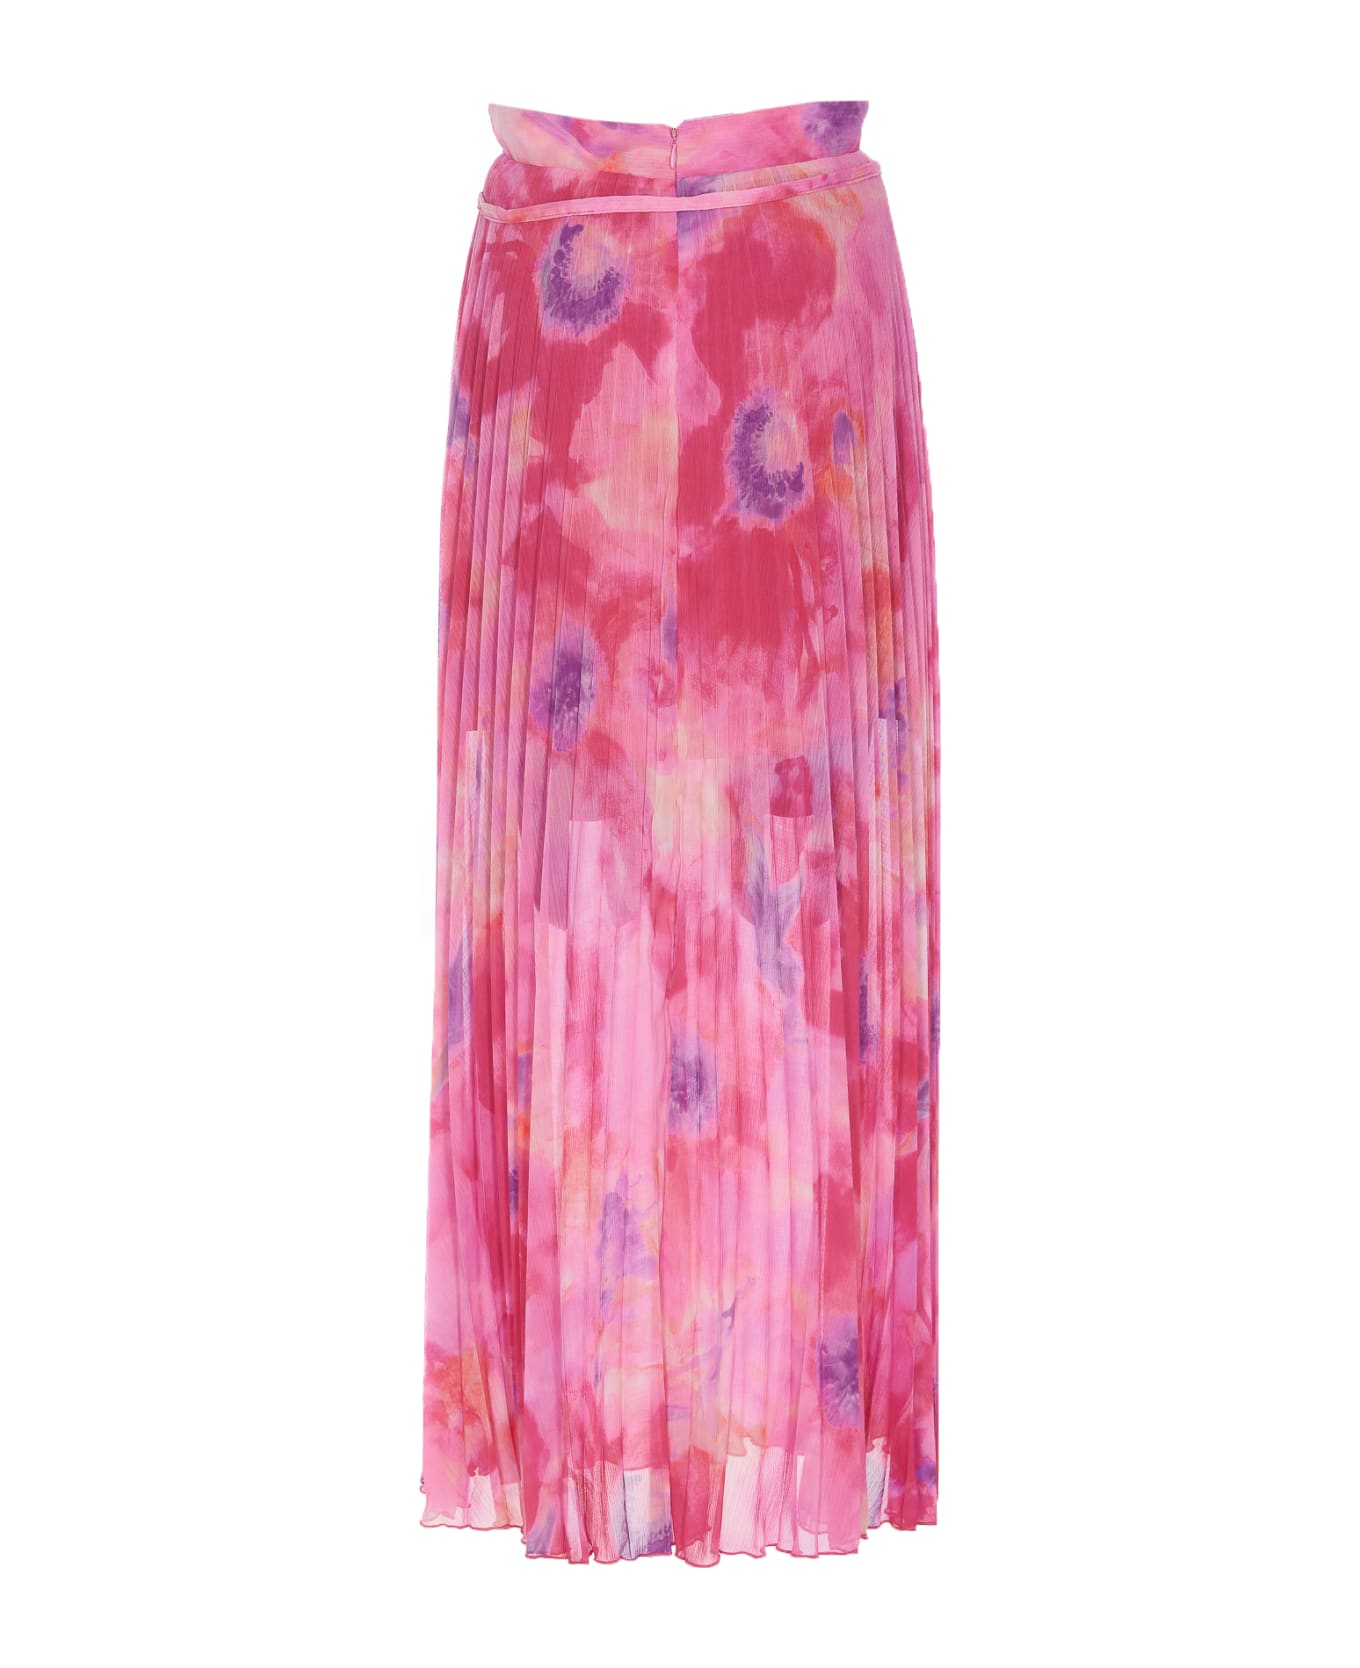 Liu-Jo Pleated Skirt - Pink